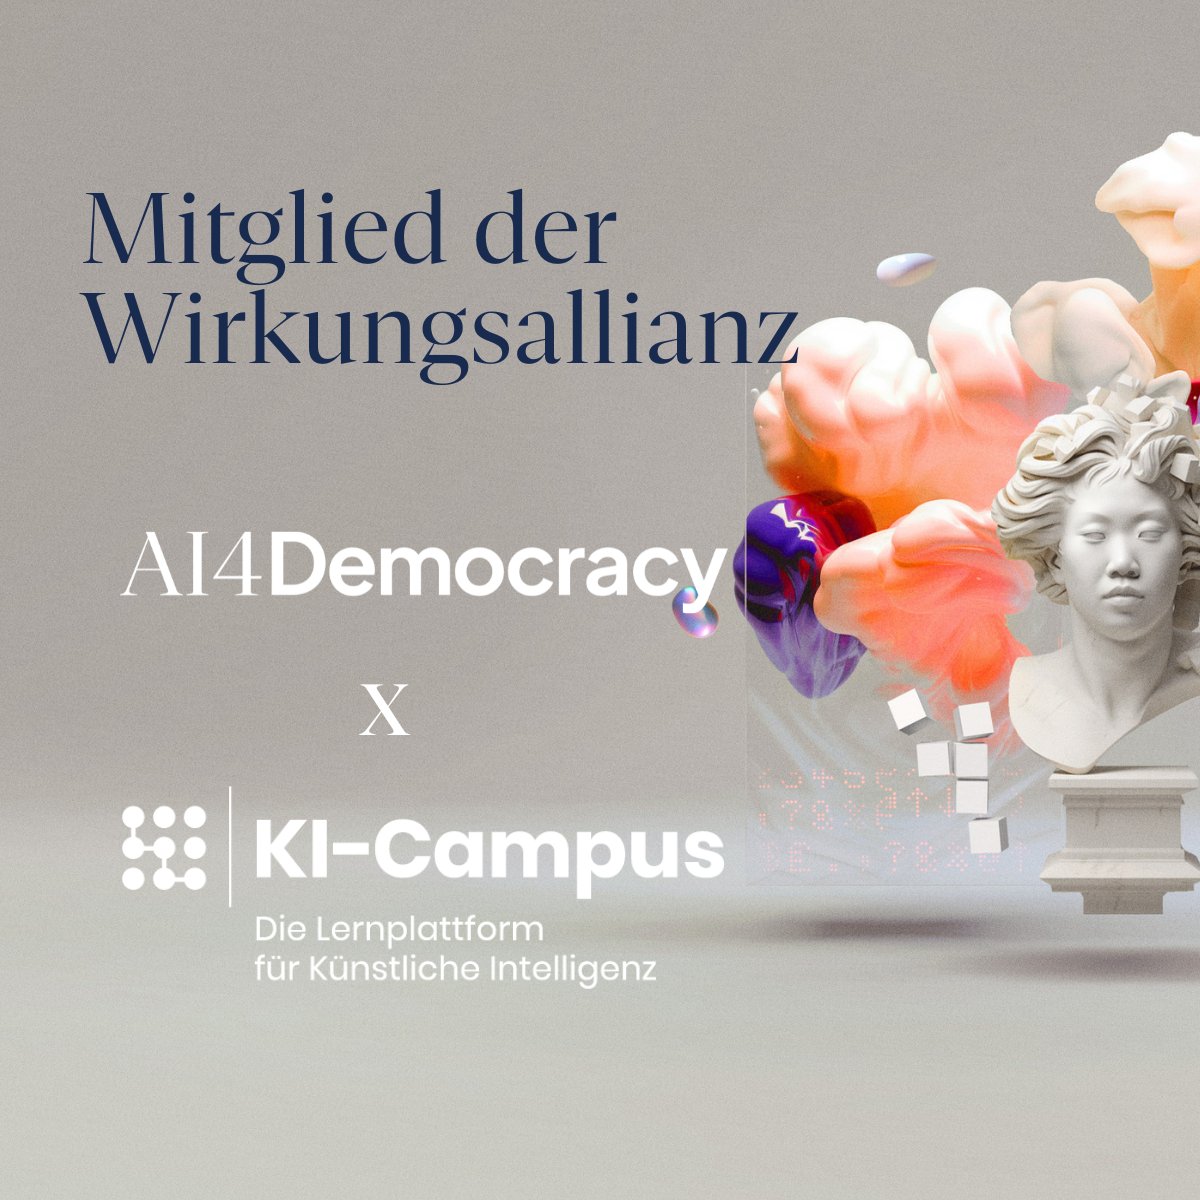 Die Wirkungsallianz #AI4Democracy ist gestartet & wir sind dabei! 🚀 Ziel ist es, durch #KI die #Demokratie & den Zusammenhalt zu stärken. 🤝 Mit unseren Lernangeboten möchten wir dazu einen Beitrag leisten! 👩‍💻 Alle Infos: ➡️ai4democracy.com #KICampus #DigitaleBildung